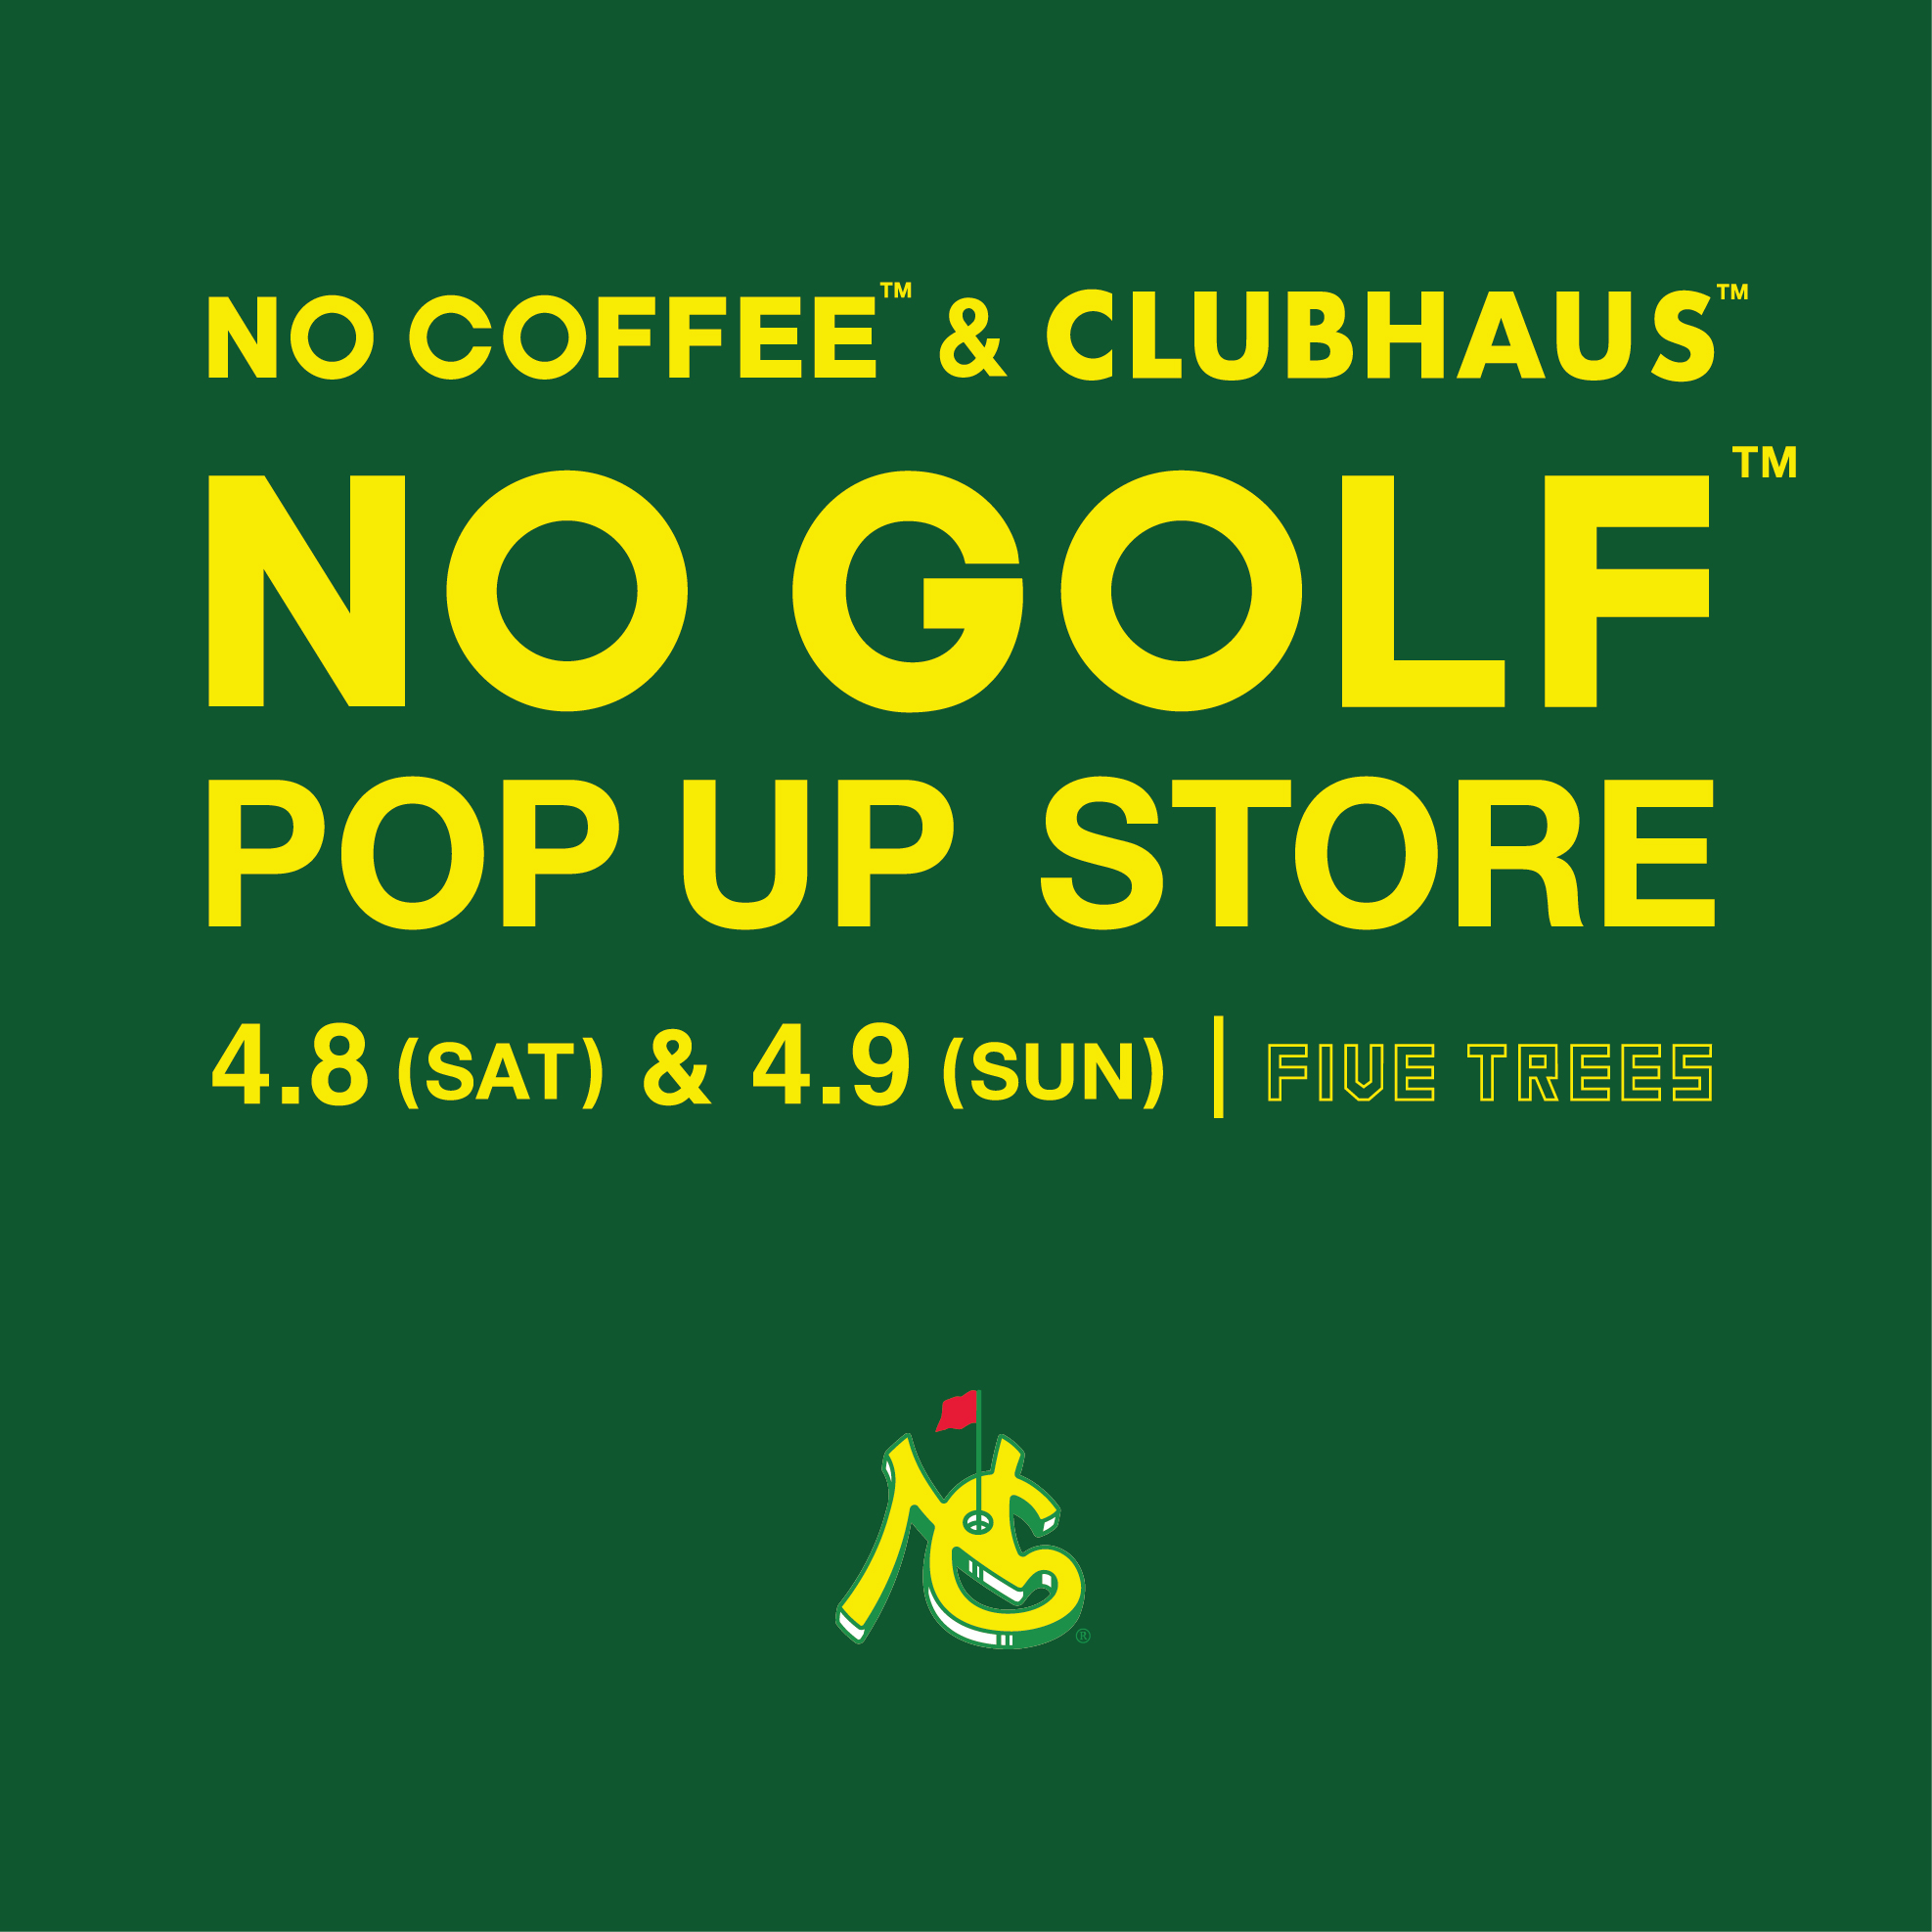 “NO COFFEE ＆ CLUBHAUS” コラボ、”NO GOLF